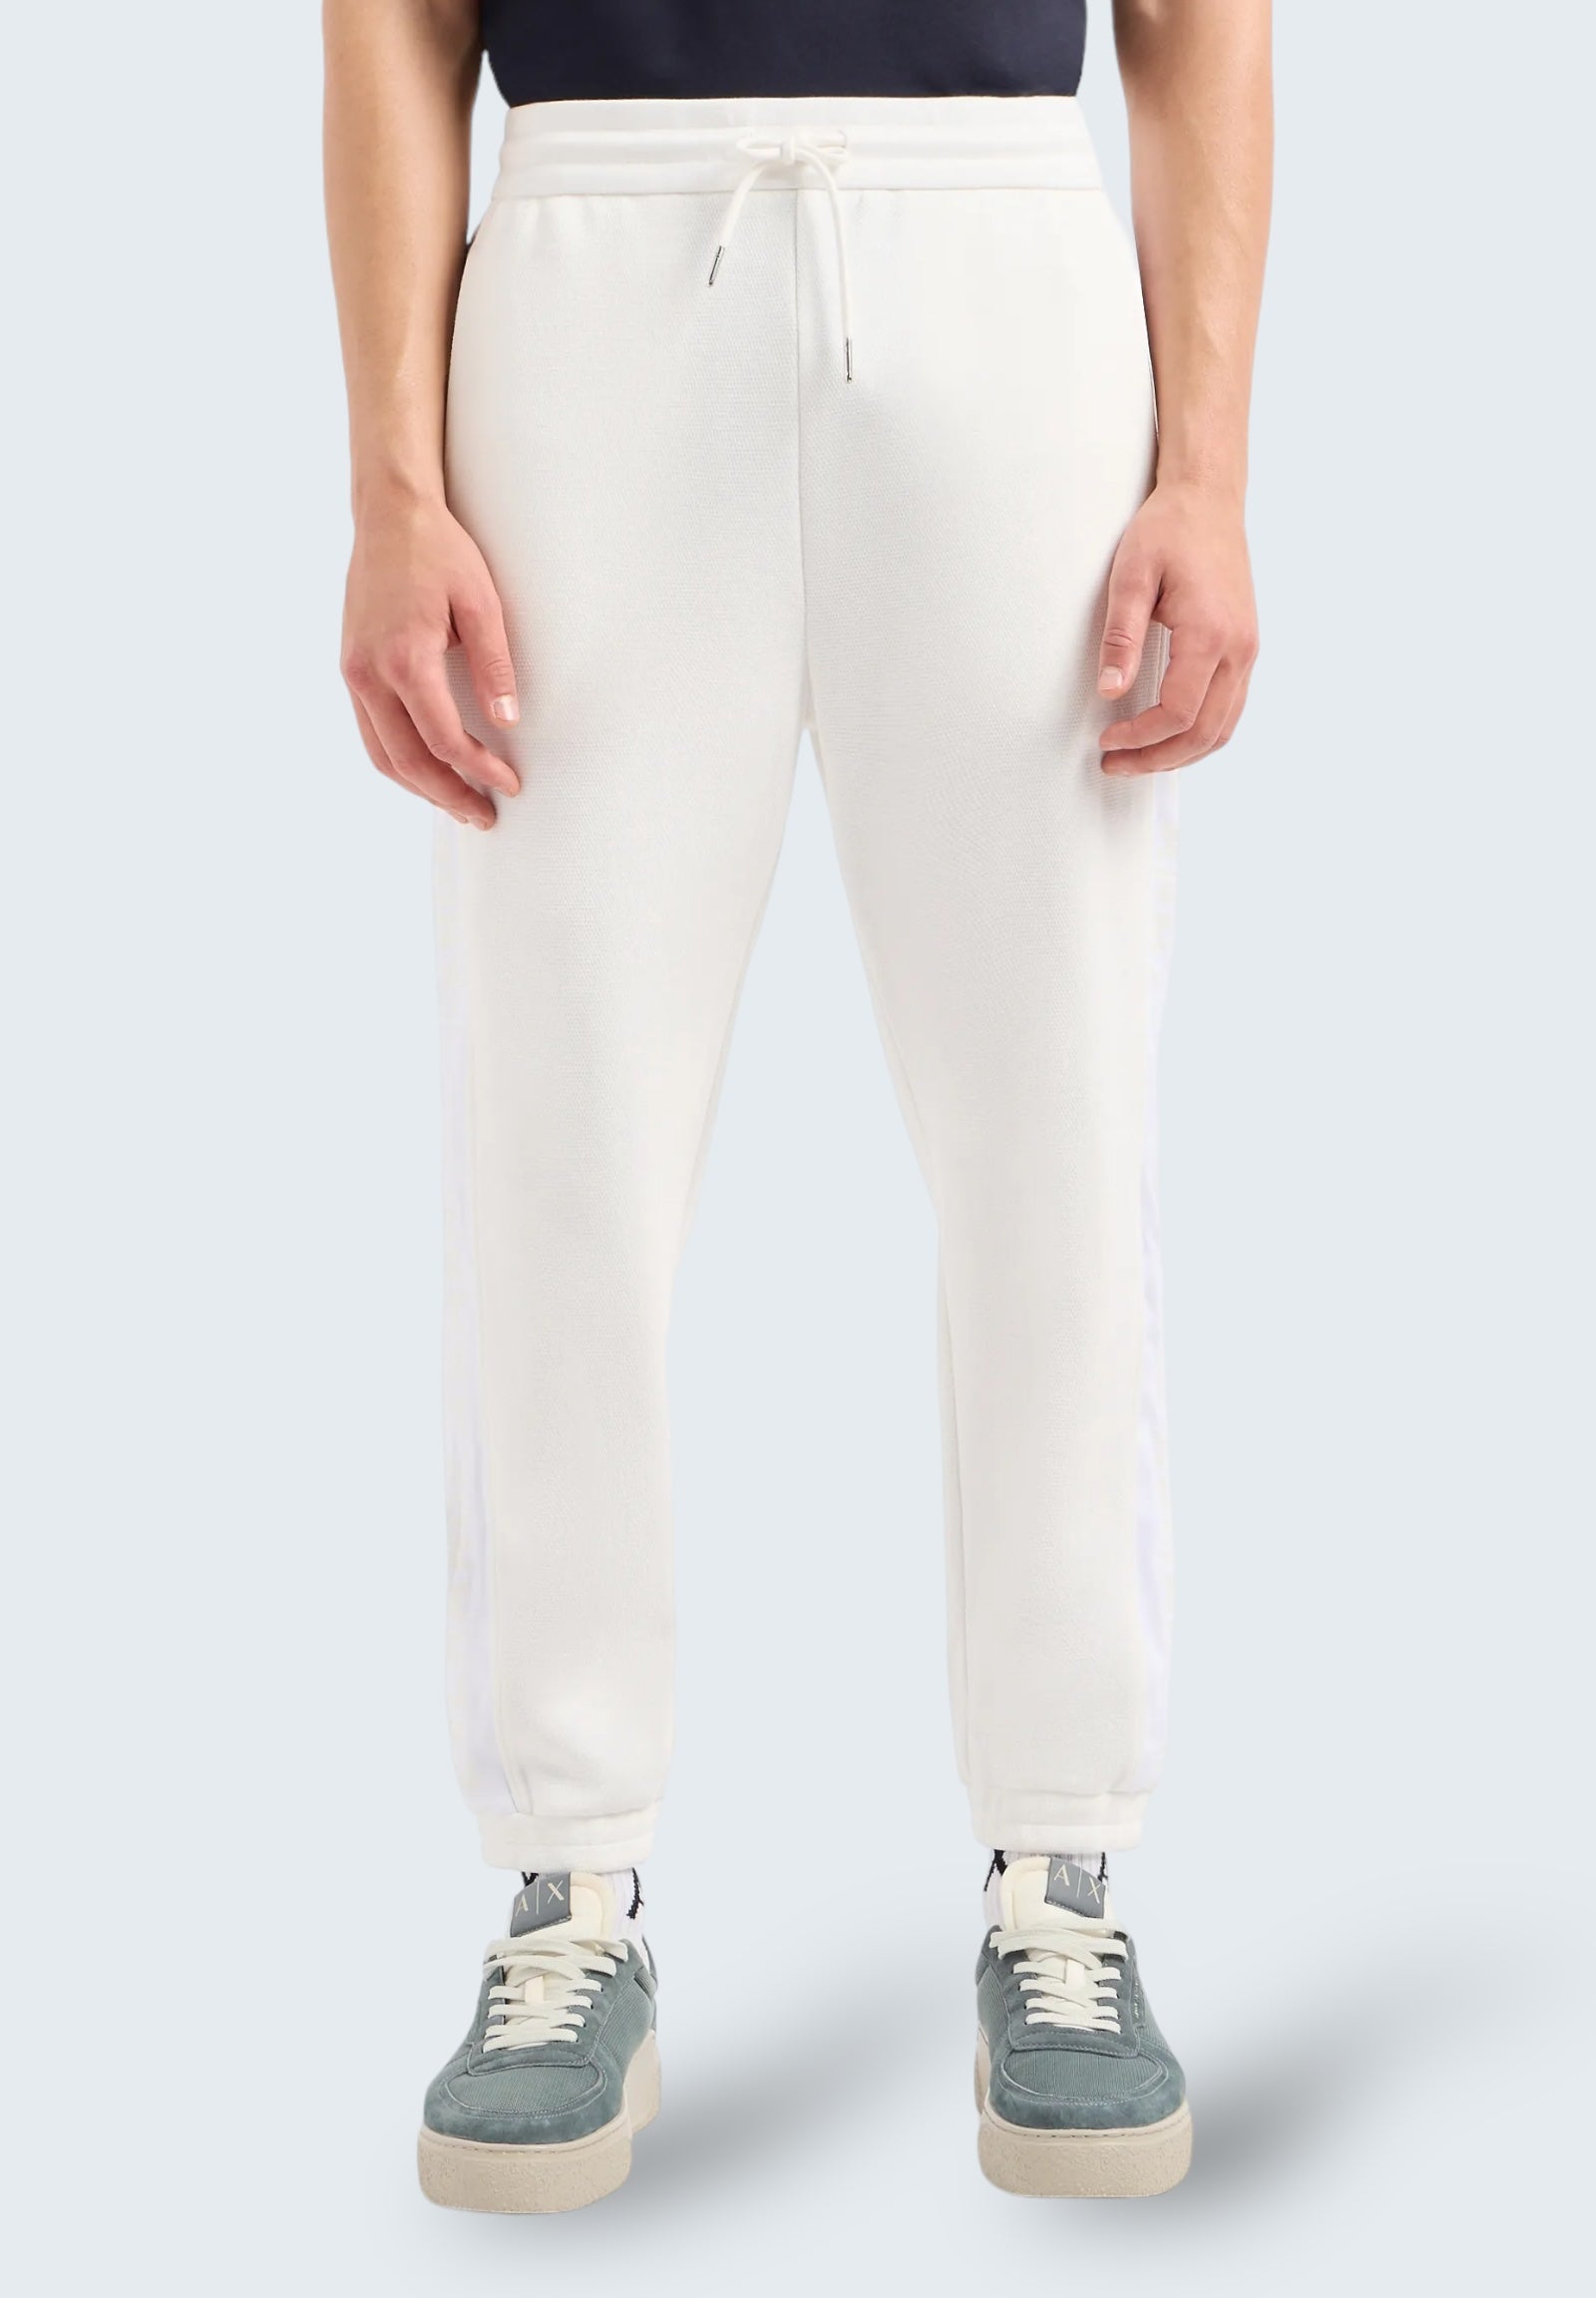 Pantaloni Tuta 3dzpla Off White